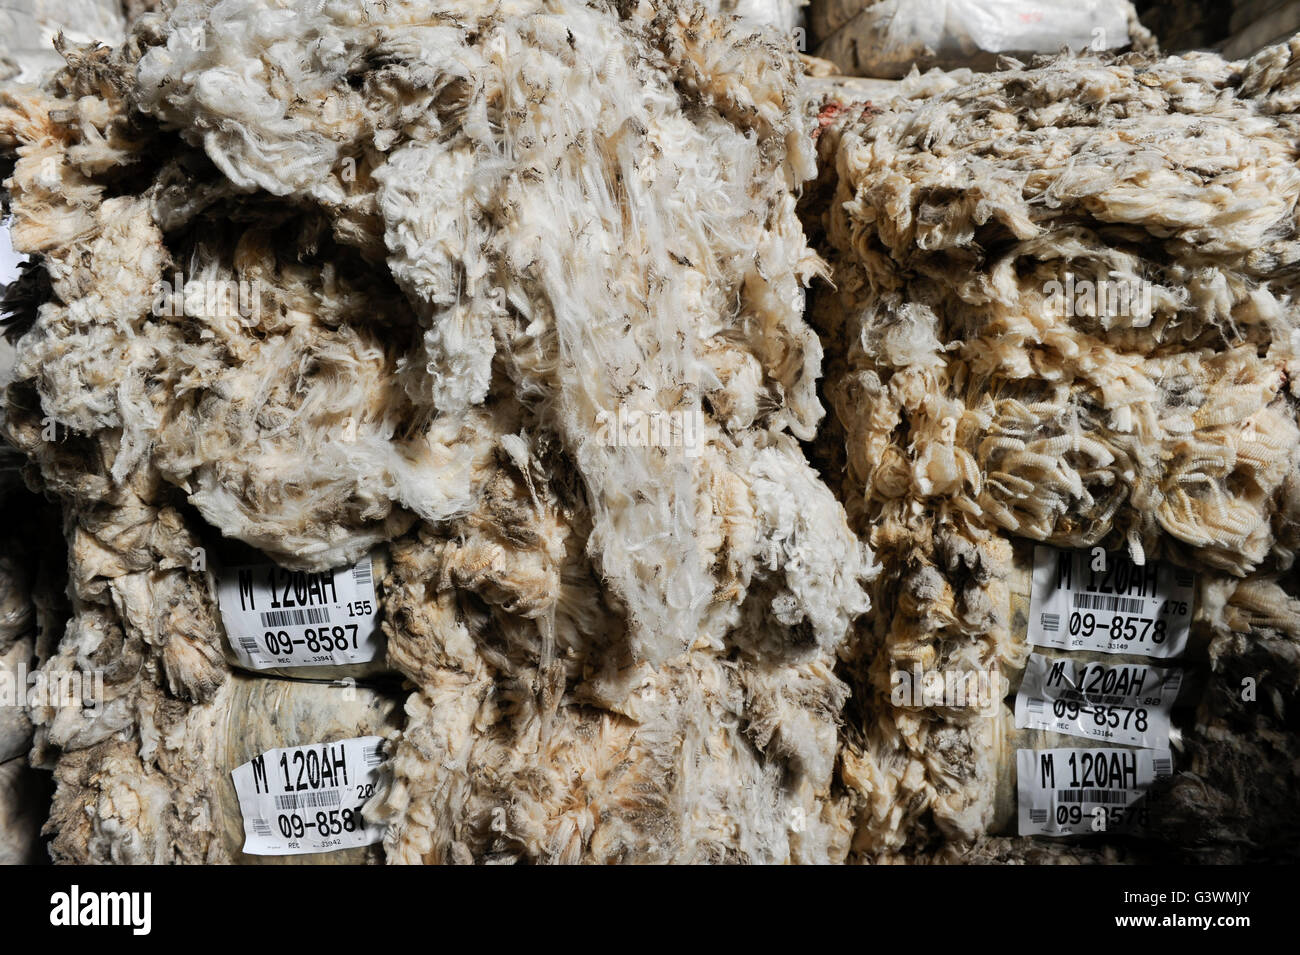 URUGUAY Verarbeitung von Merino Schafswolle bei Lanas Trinidad S.A. , Anlieferung und Sortierung der Wolle /  URUGUAY city Trinidad, company Lanas Trinidad  S.A. processing of Merino sheep wool Stock Photo